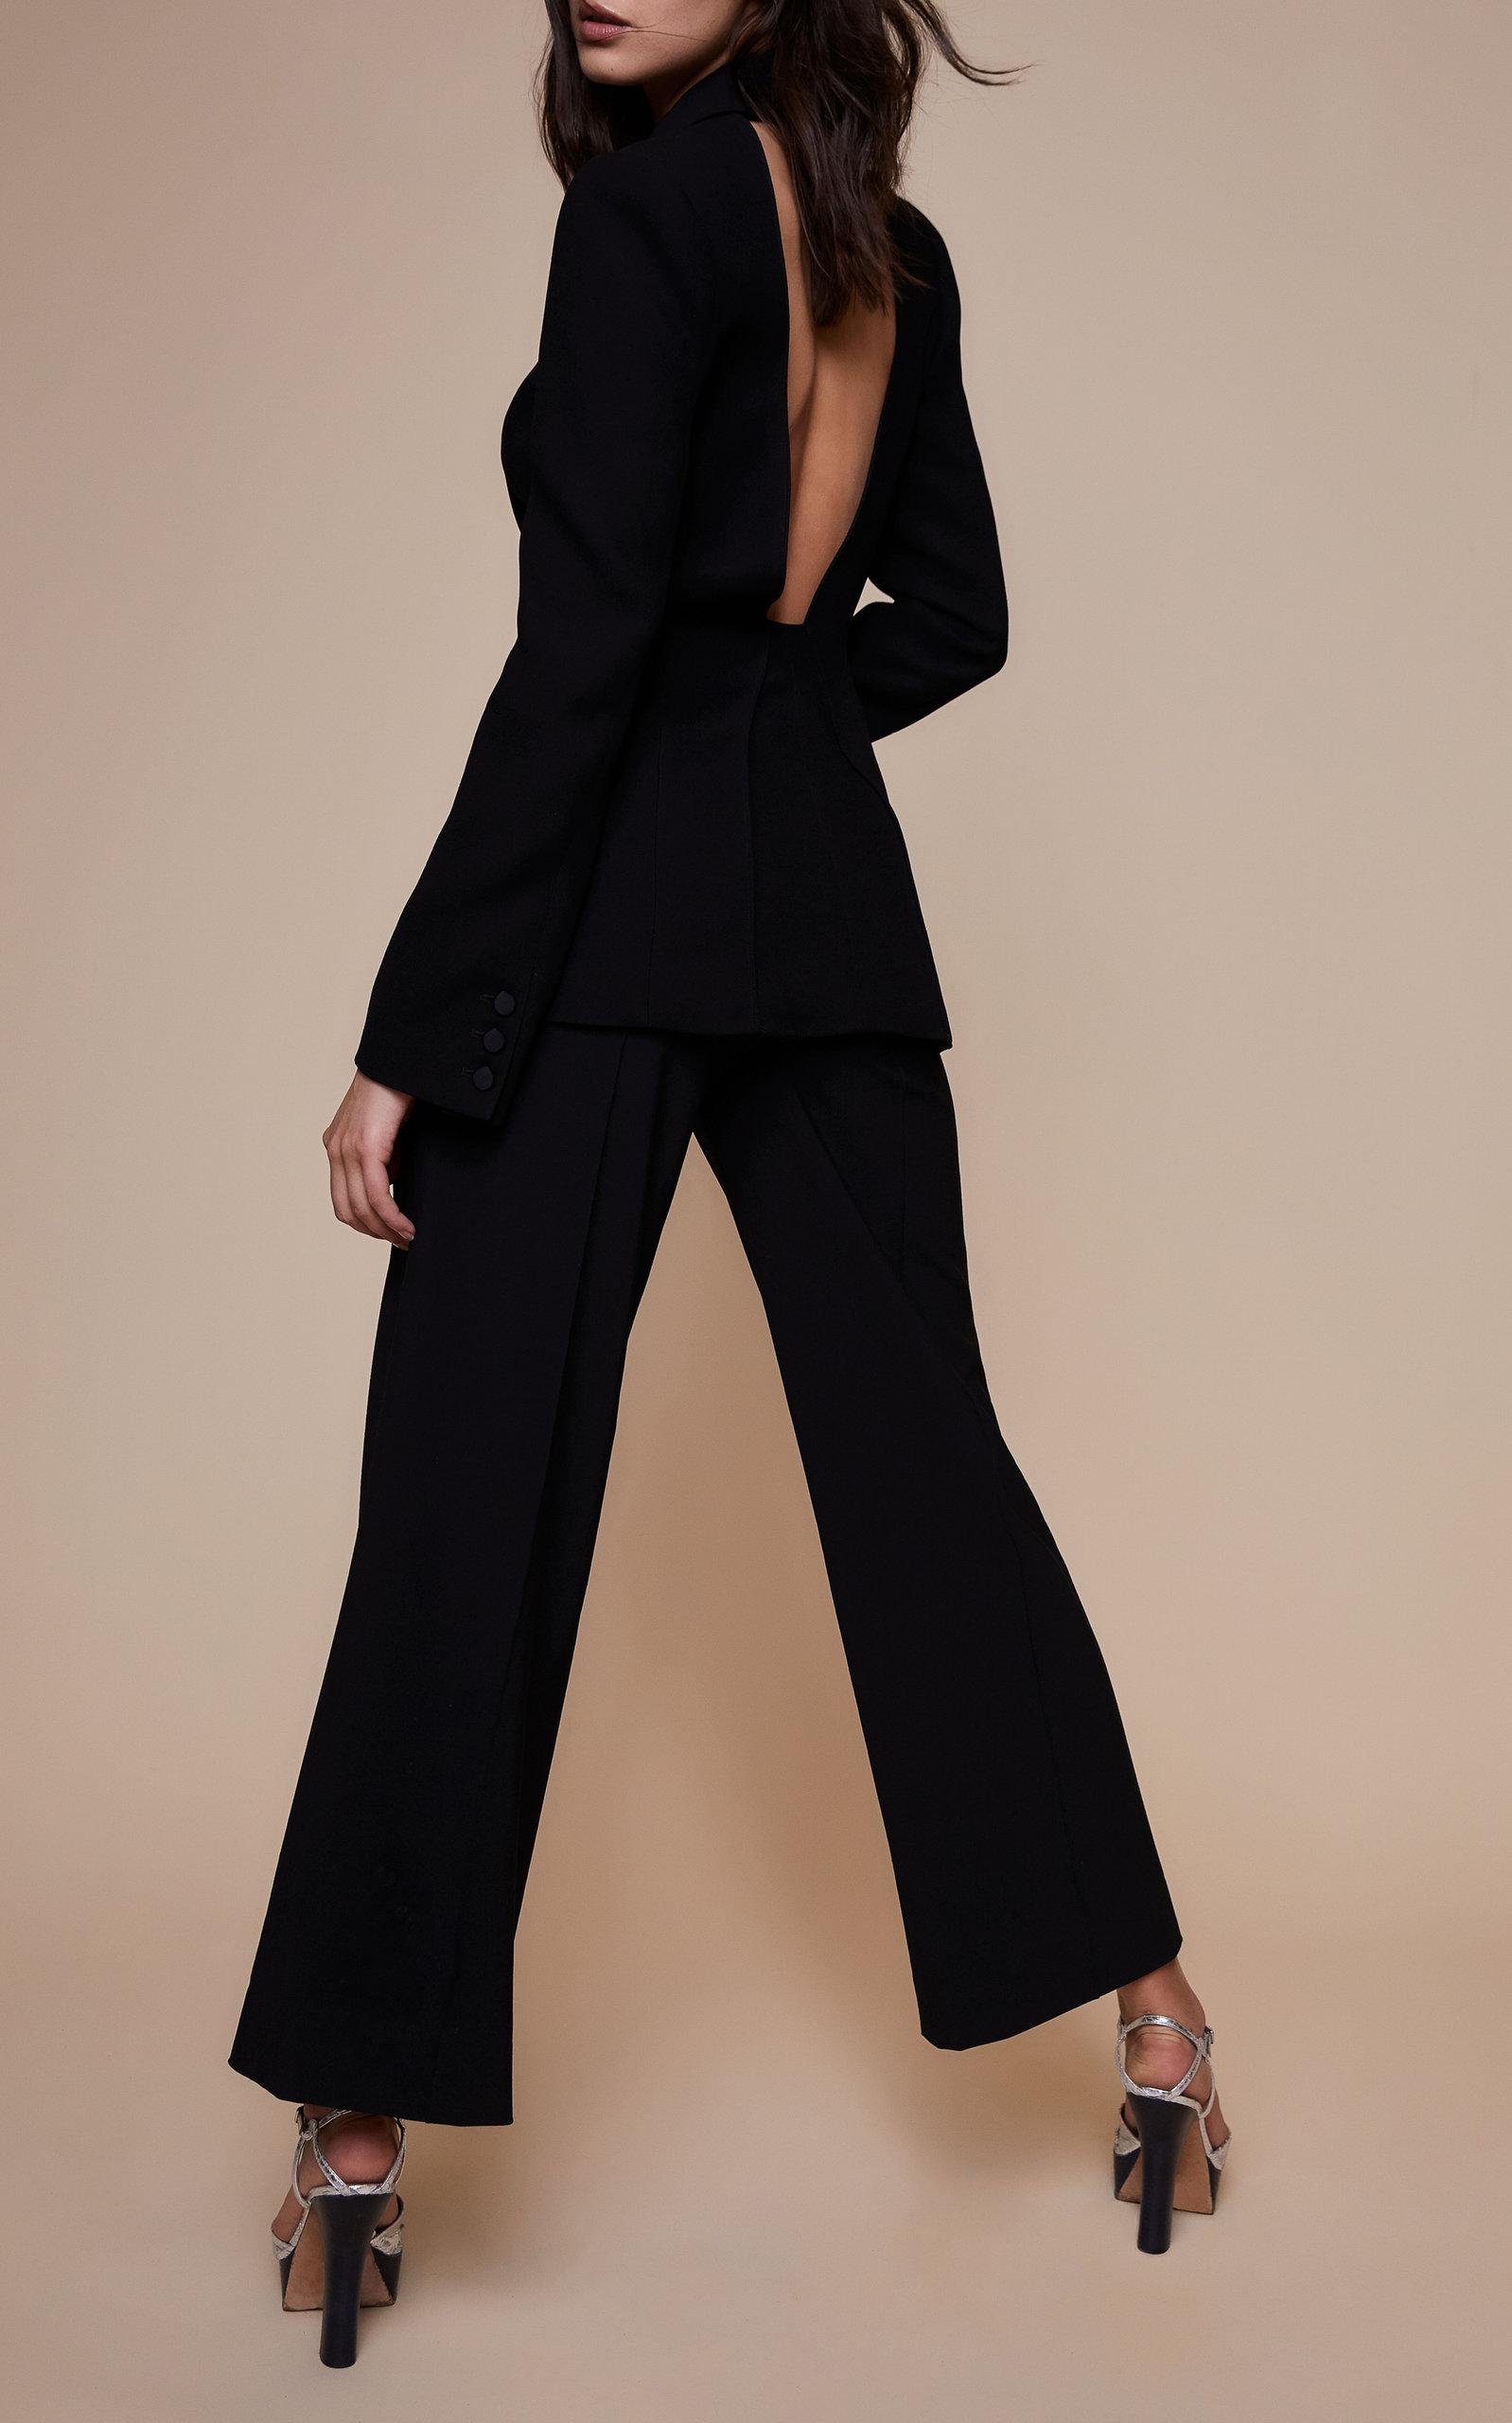 Diane von Furstenberg Collared Open Back Blazer in Black | Lyst